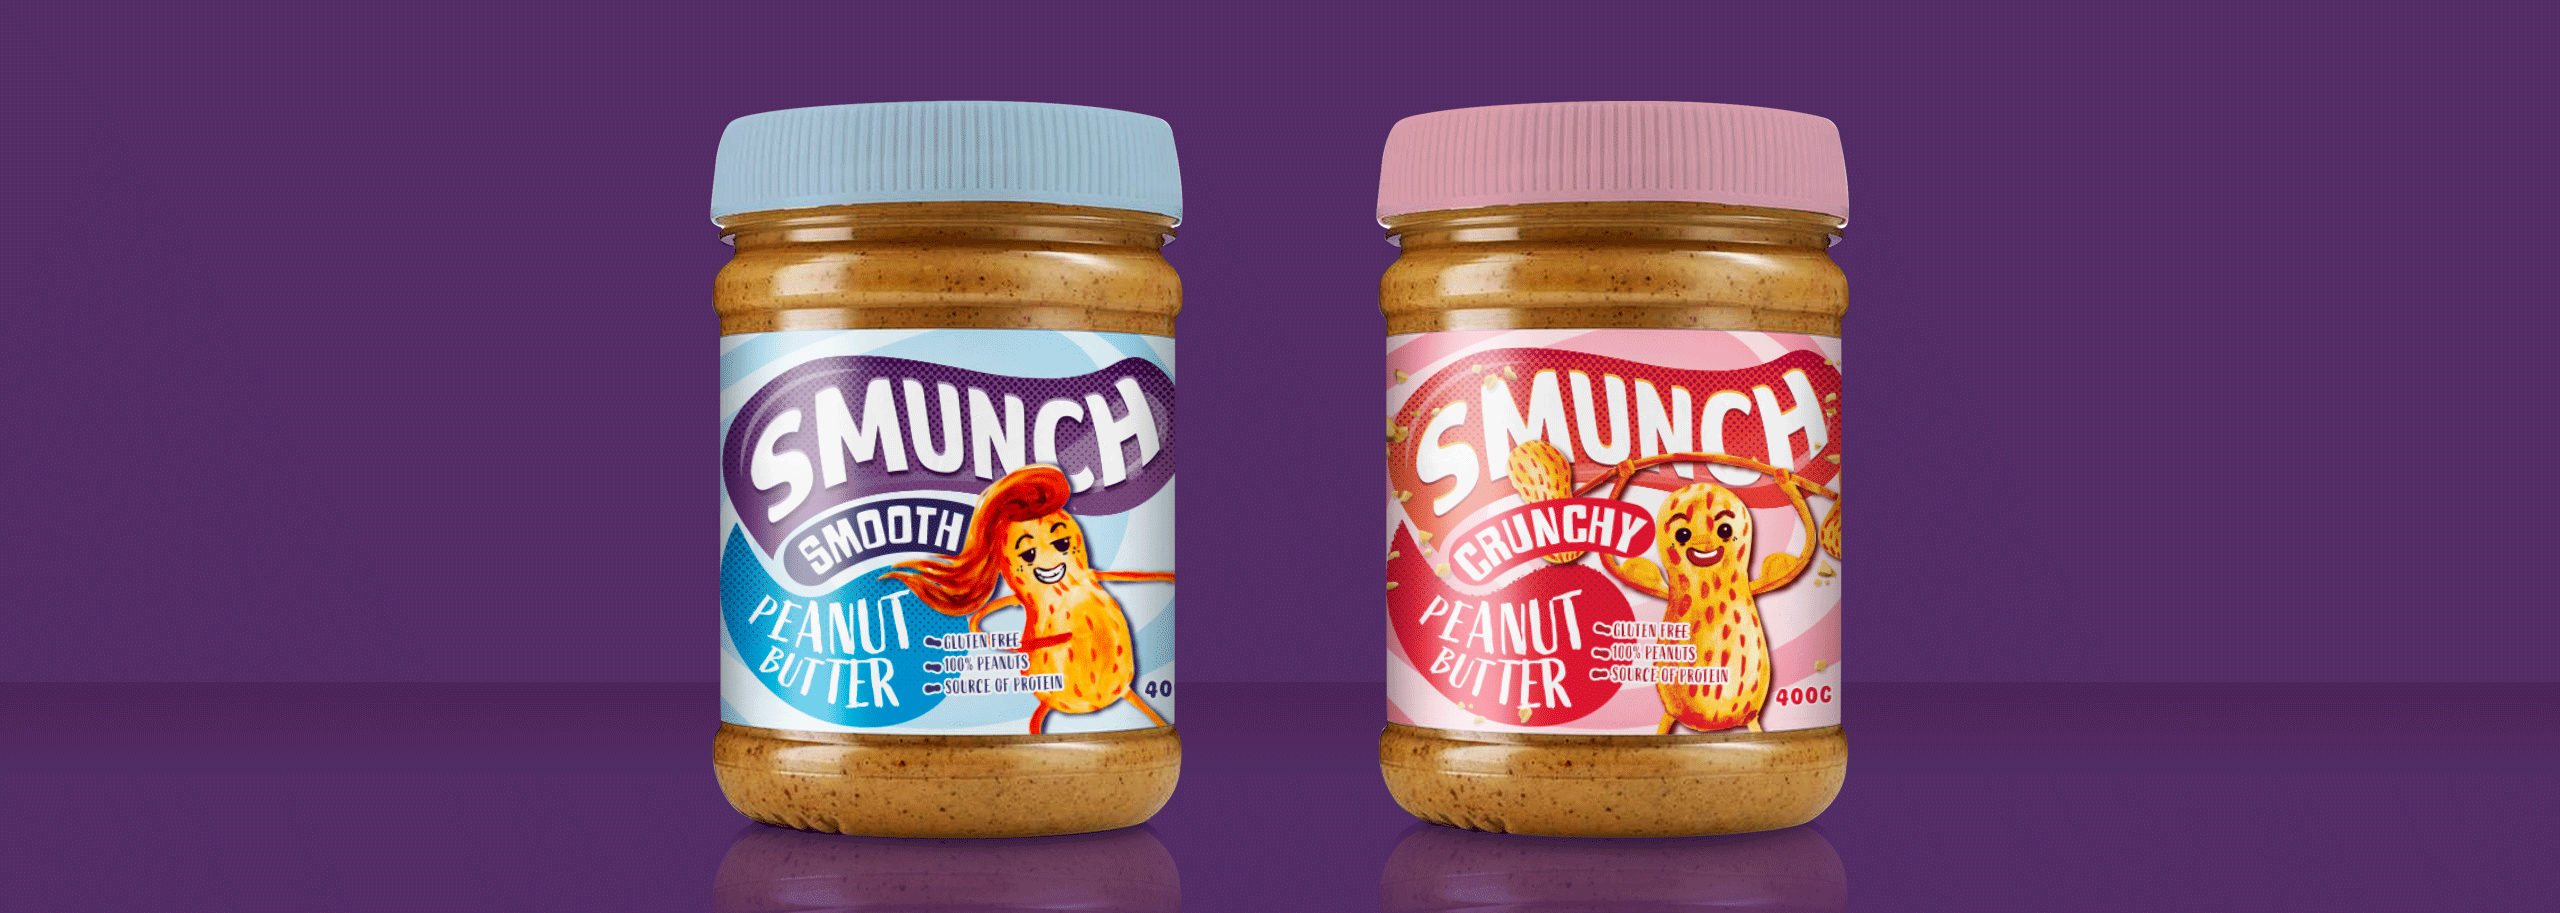 Smunch Peanut Butter-3